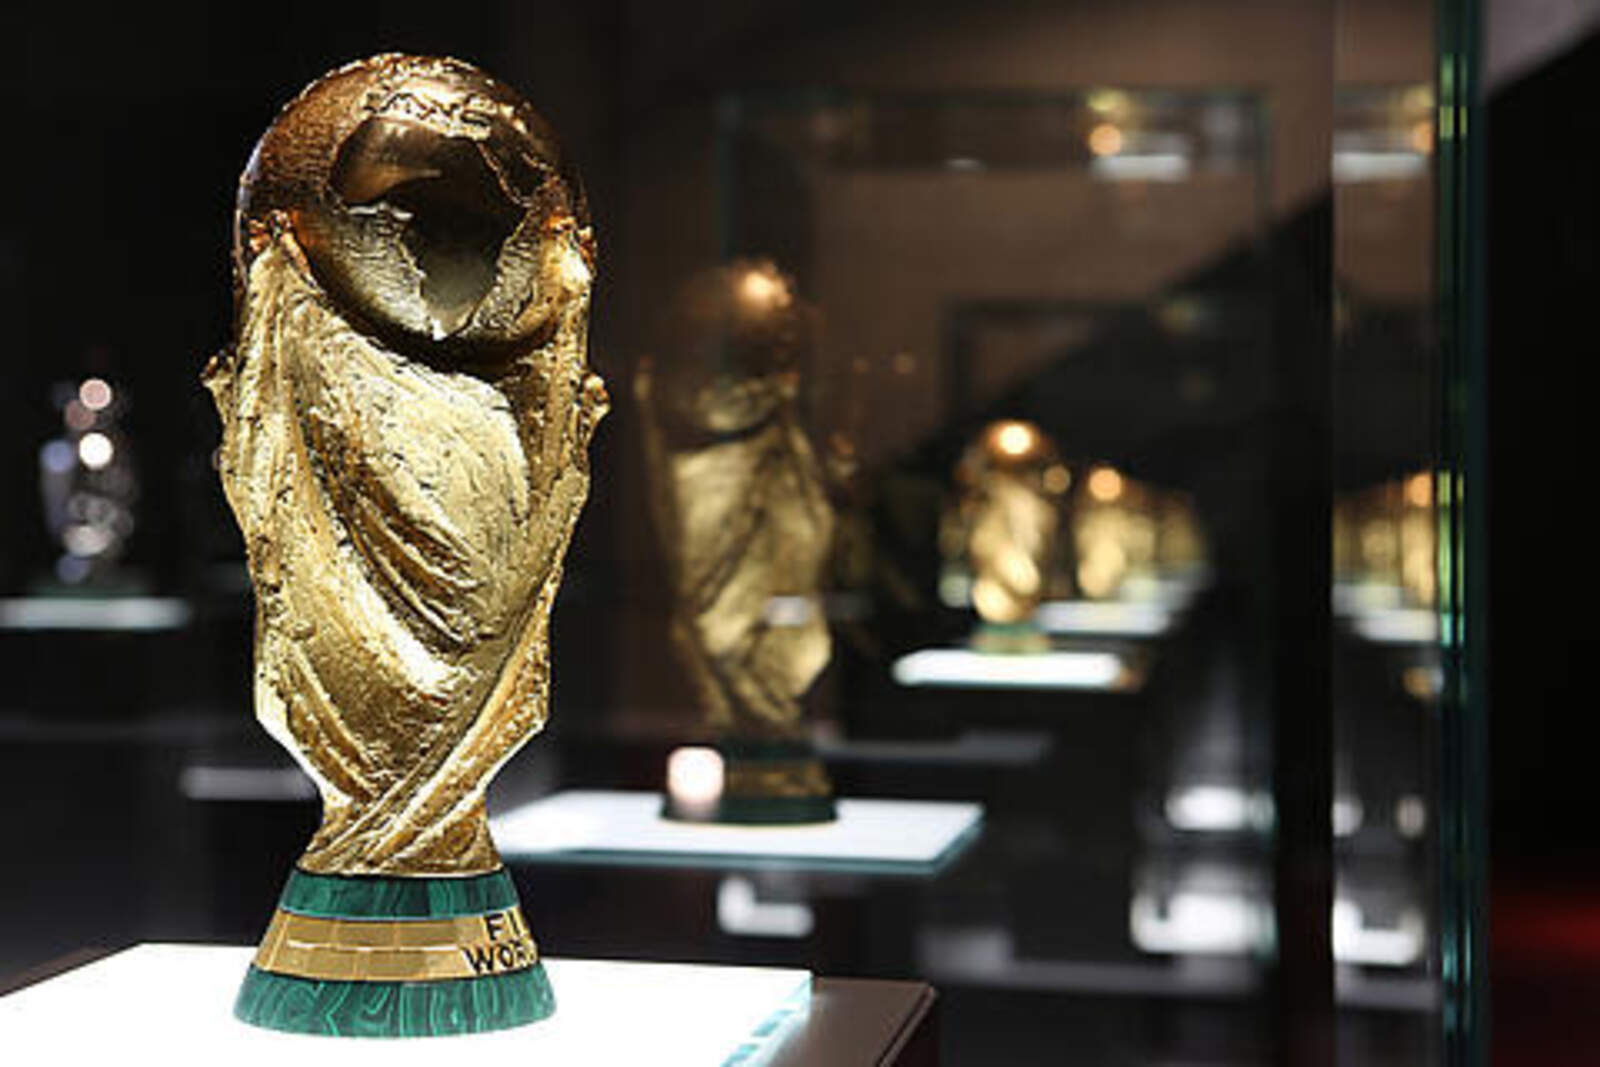 Der WM-Pokal 2014 im Vordergrund, dahinter die übrigen Top-Trophäen der Nationalmannschaft